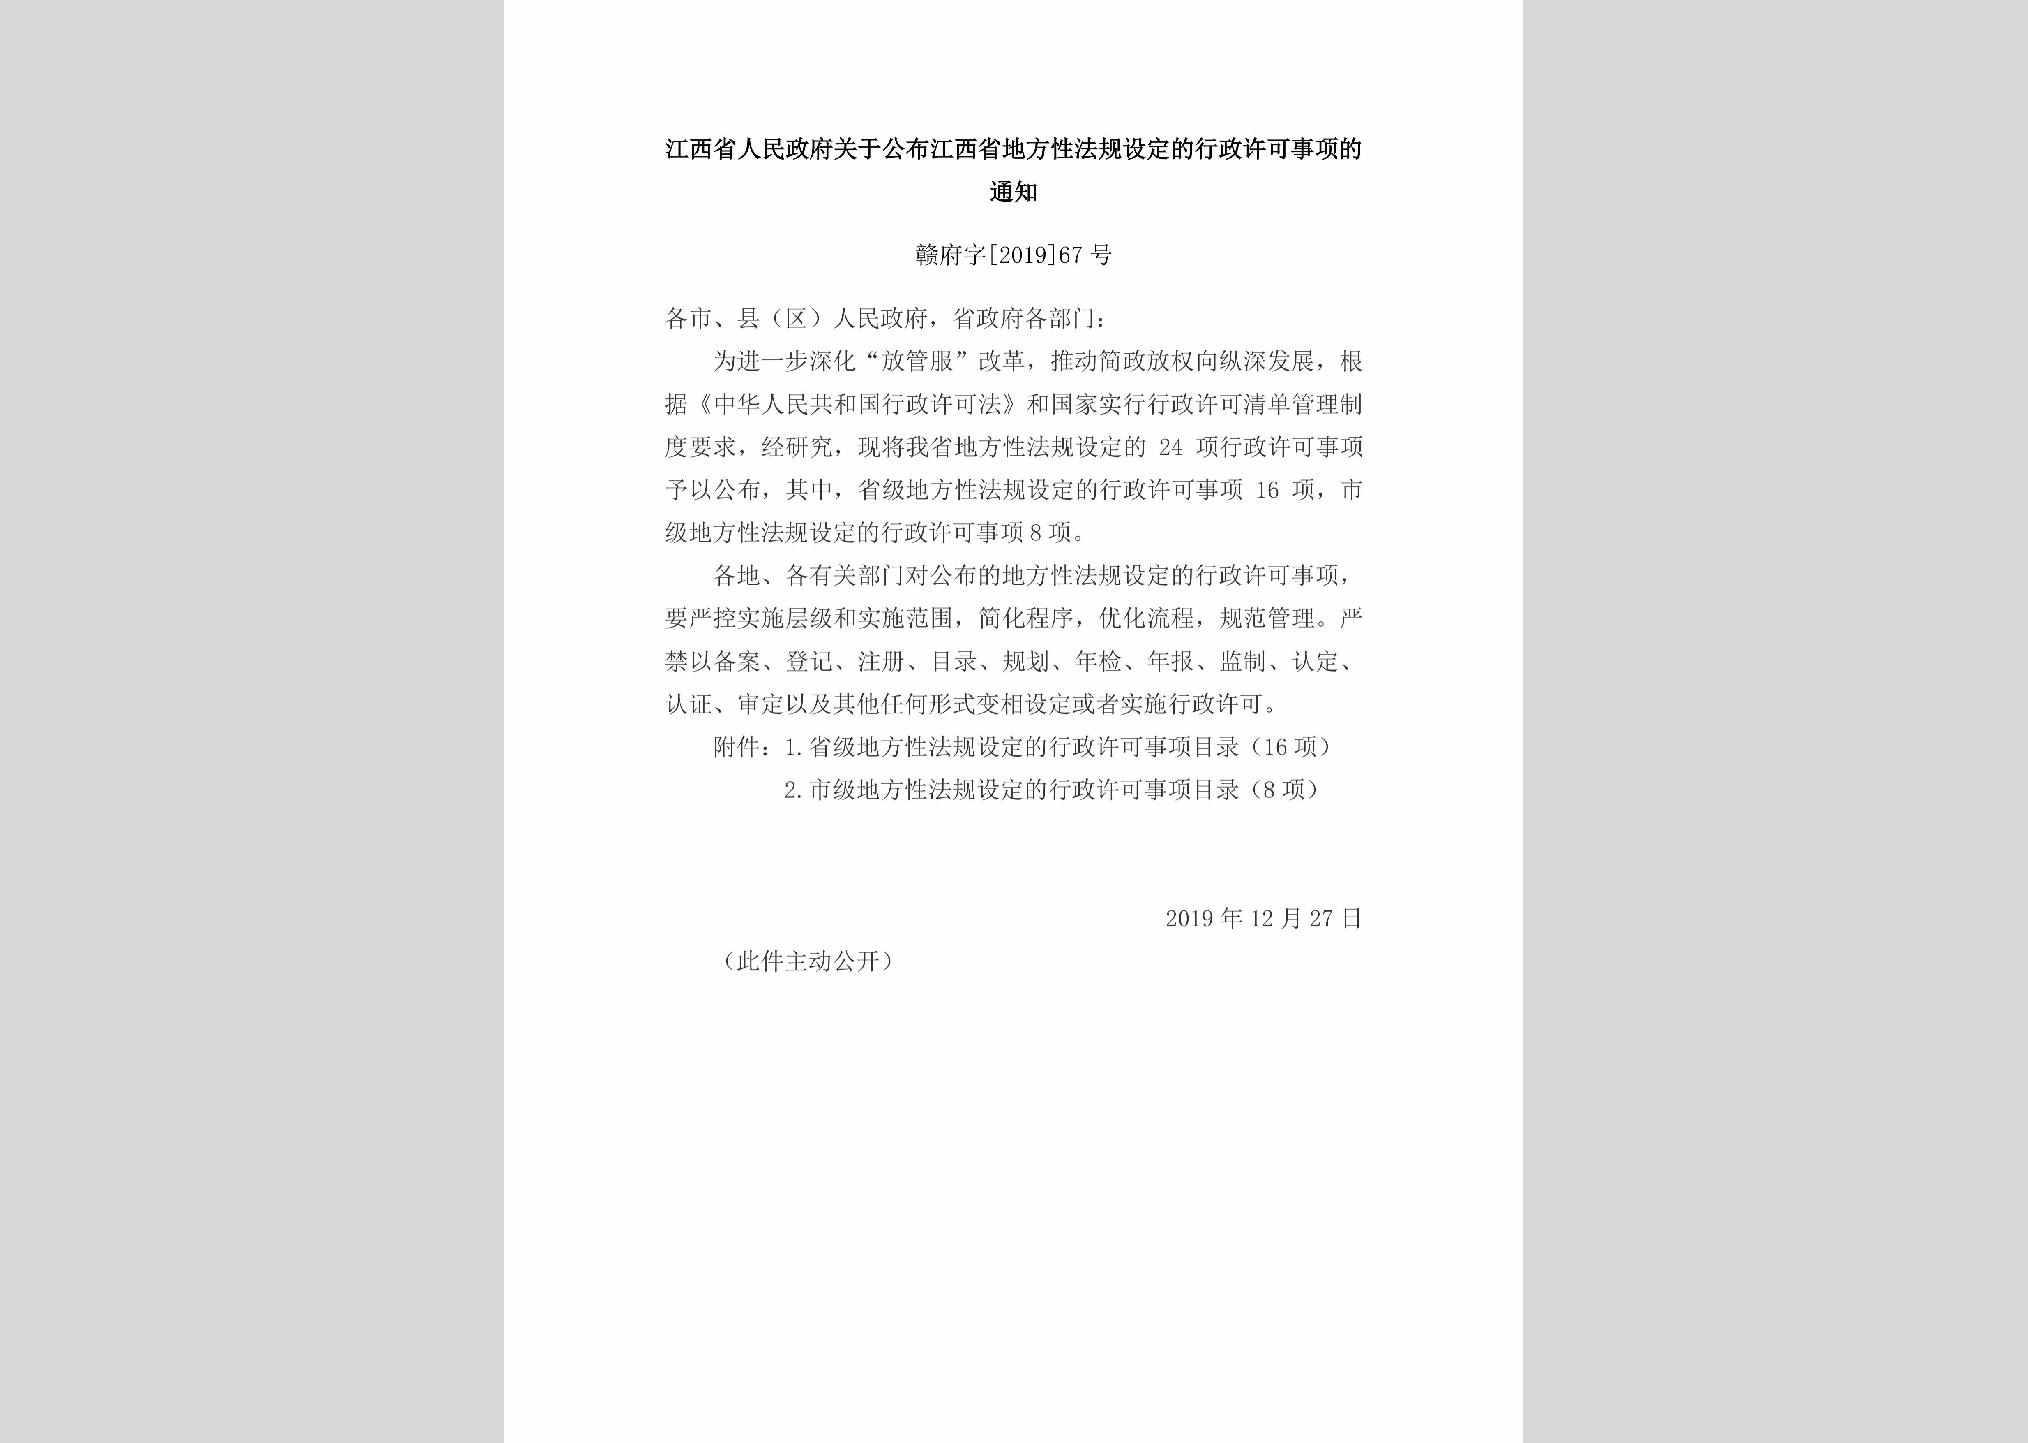 赣府字[2019]67号：江西省人民政府关于公布江西省地方性法规设定的行政许可事项的通知